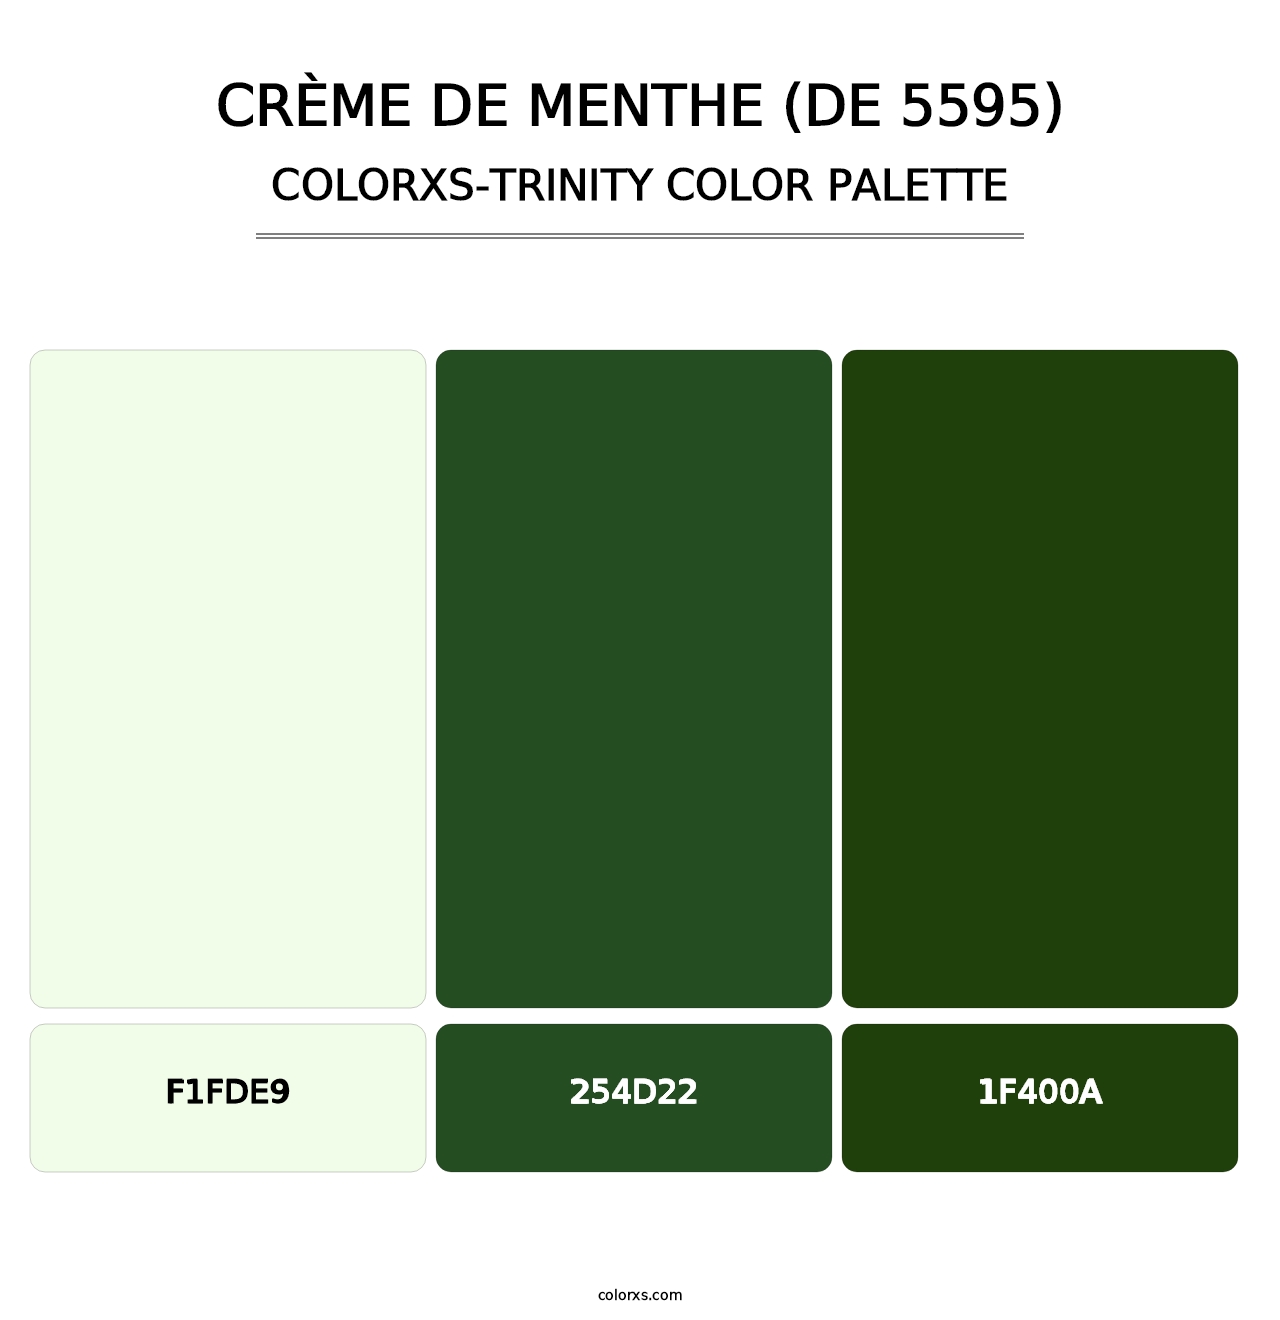 Crème de Menthe (DE 5595) - Colorxs Trinity Palette